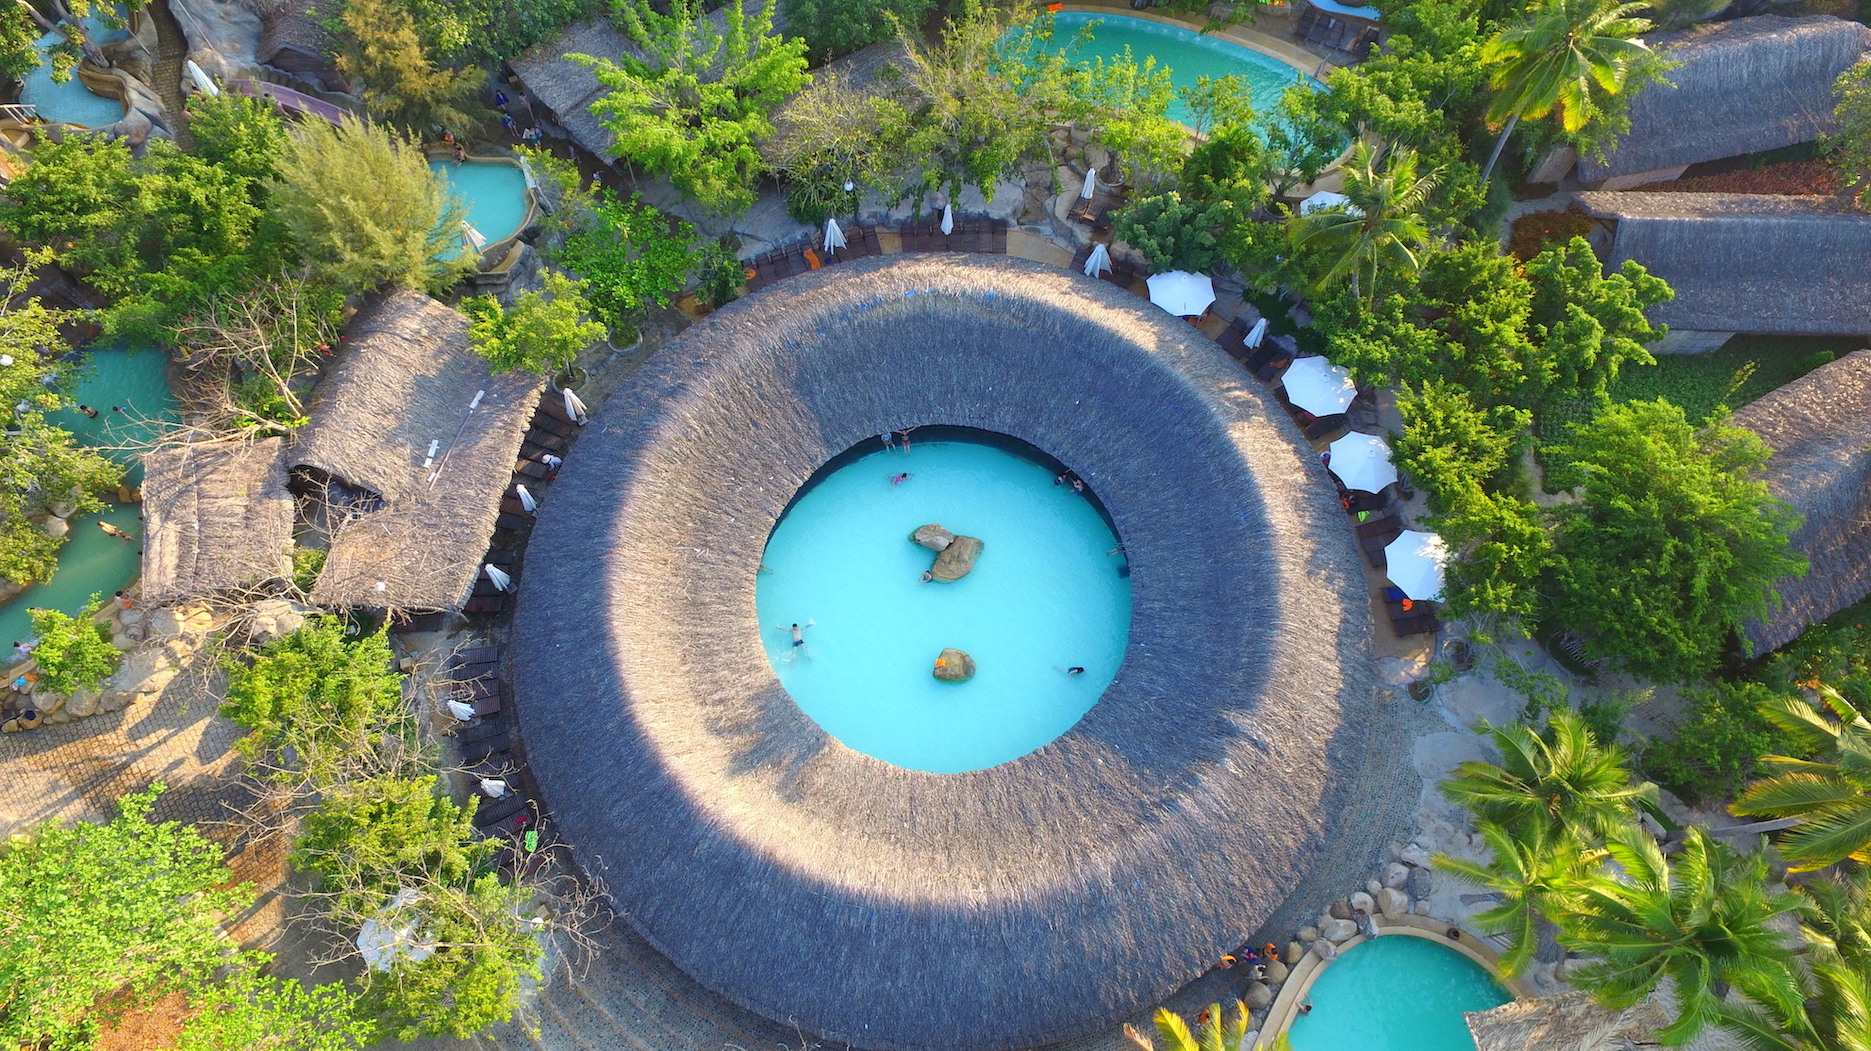 Vé I-Resort Nha Trang | Vé Vào Cửa + Tắm Bùn, Khoáng, Thảo Dược - KKday